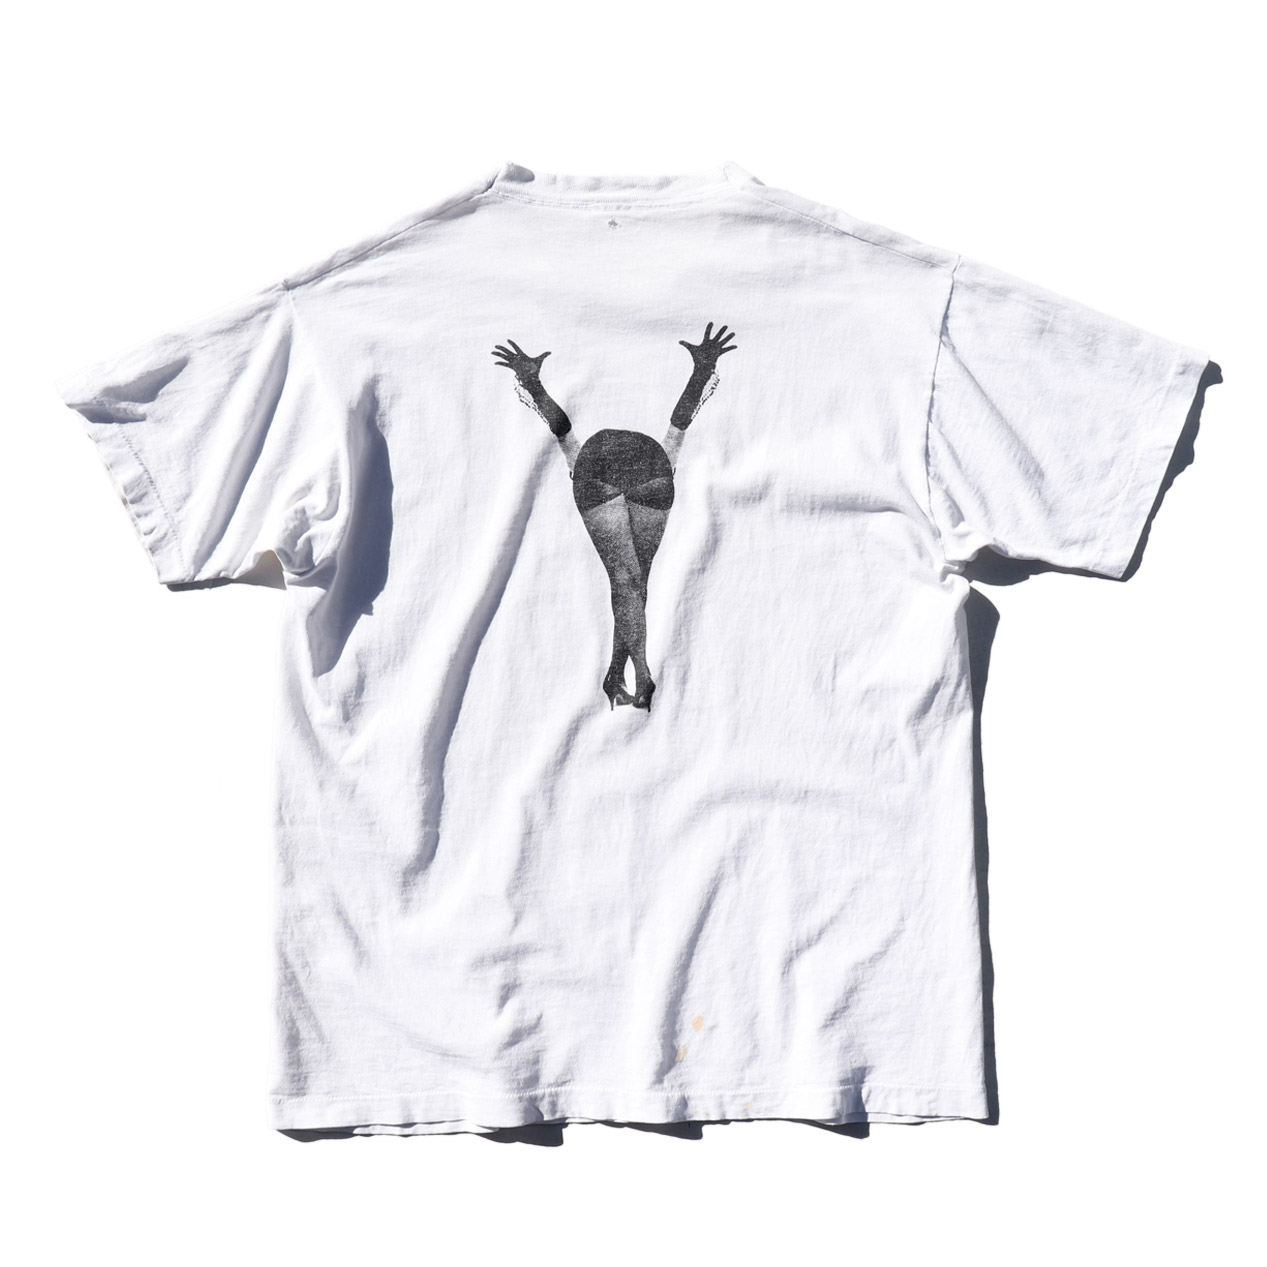 POST JUNK / 90's CG DESIGN “DAVID MORGAN” T-Shirt [About L]